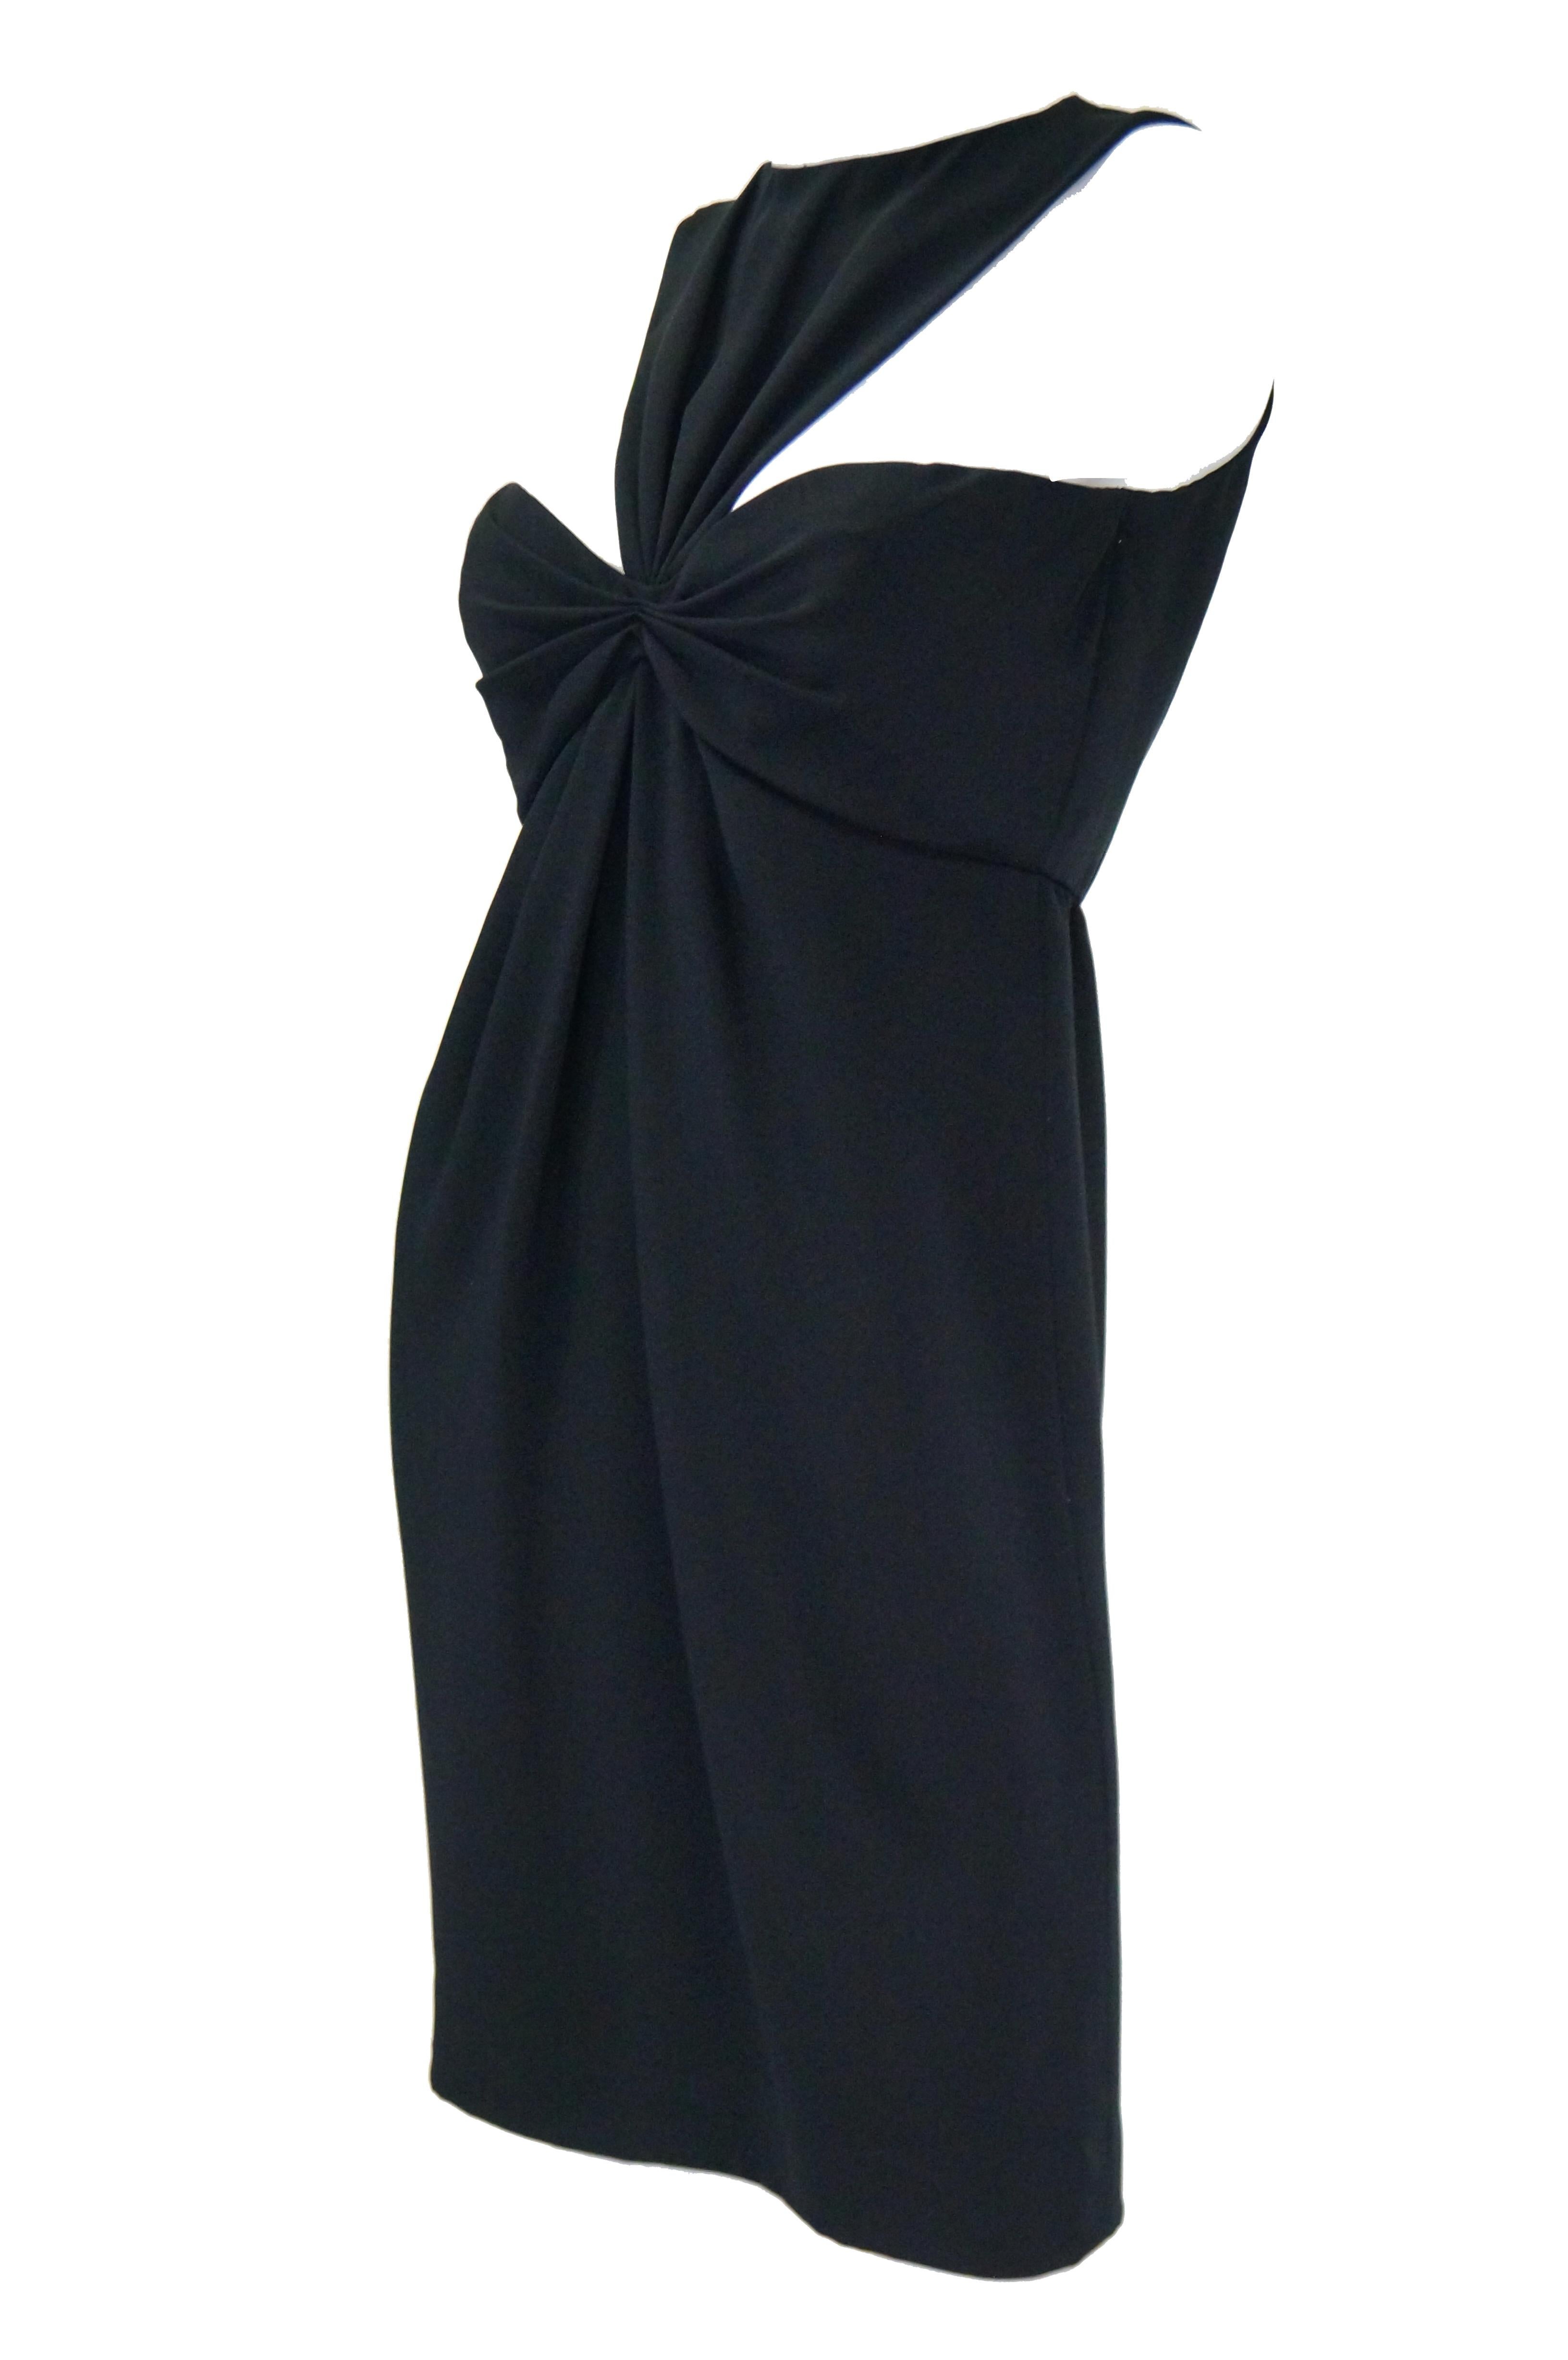 Women's 1970s Bill Blass Black Knot Front Cocktail Dress